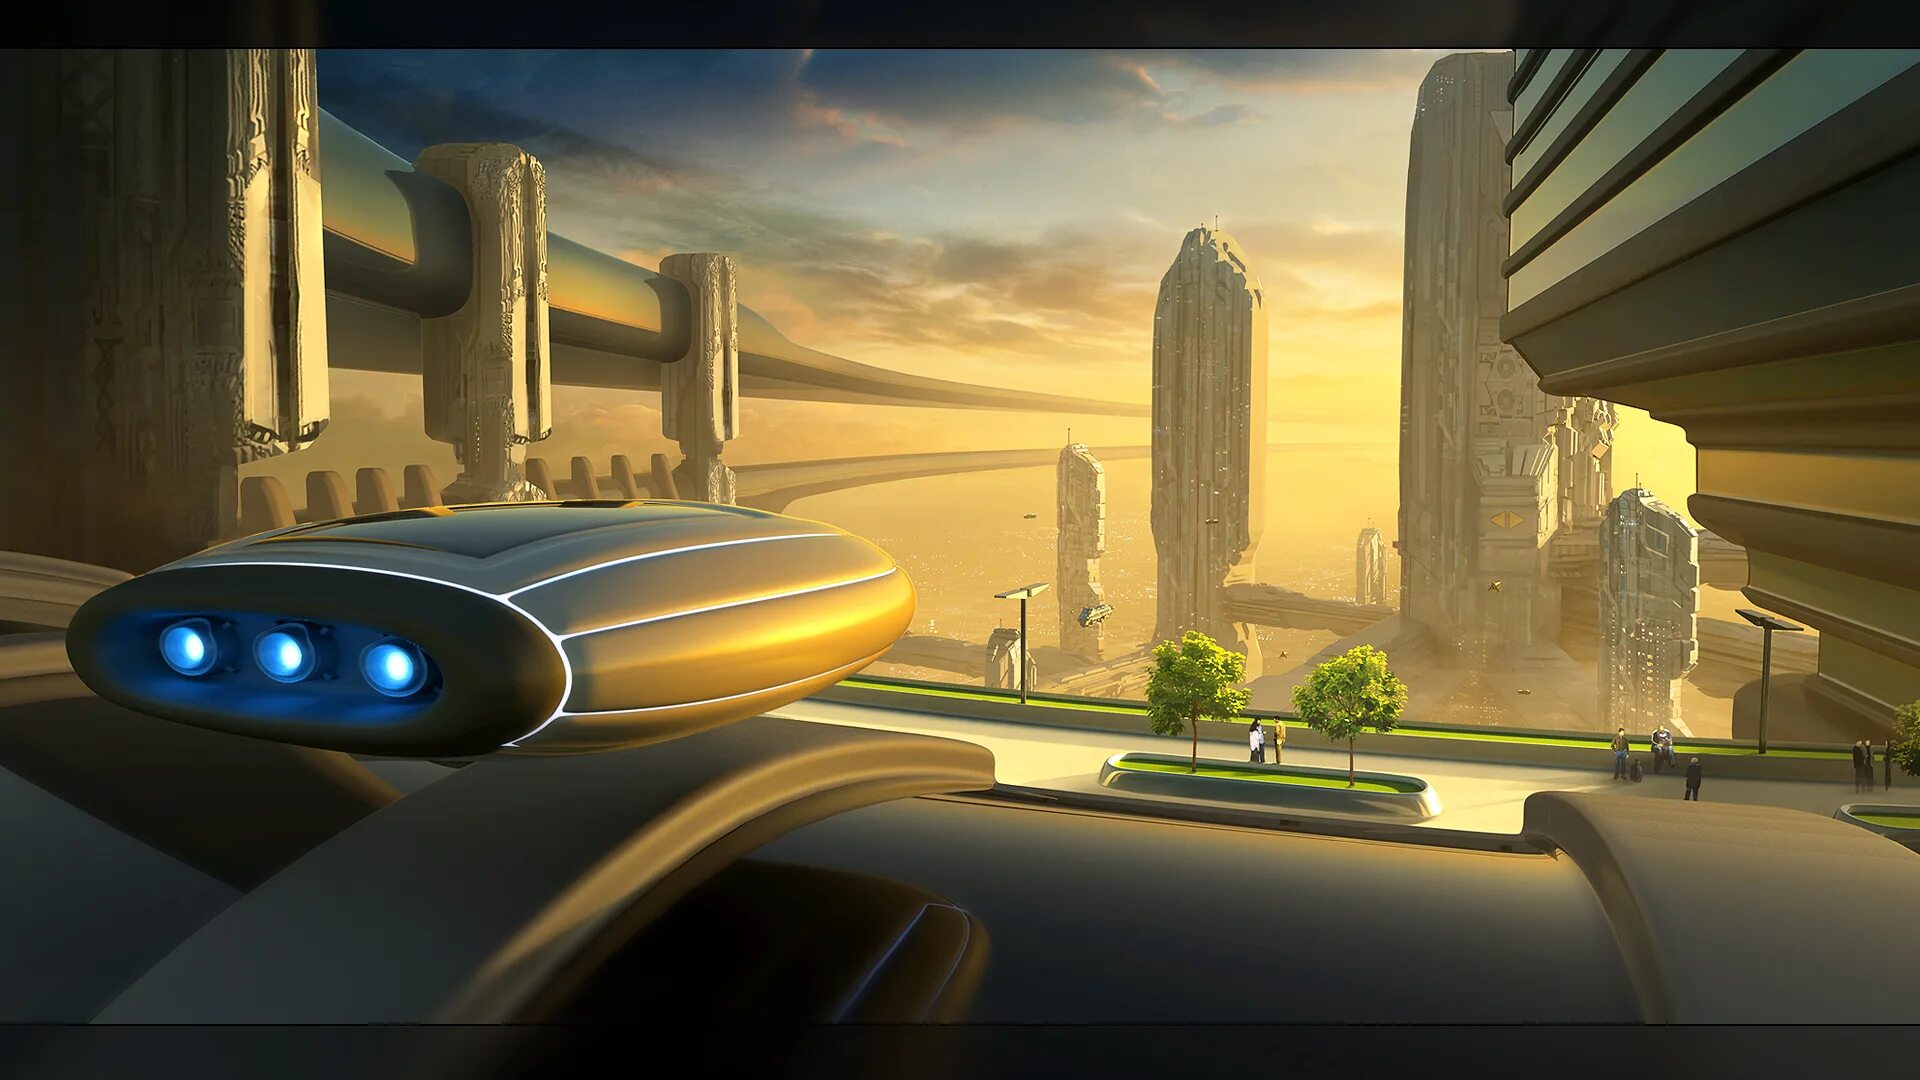 Город будущего. Город в будущем. Город будущего с летающими машинами. Космический город будущего. Потраченное будущее